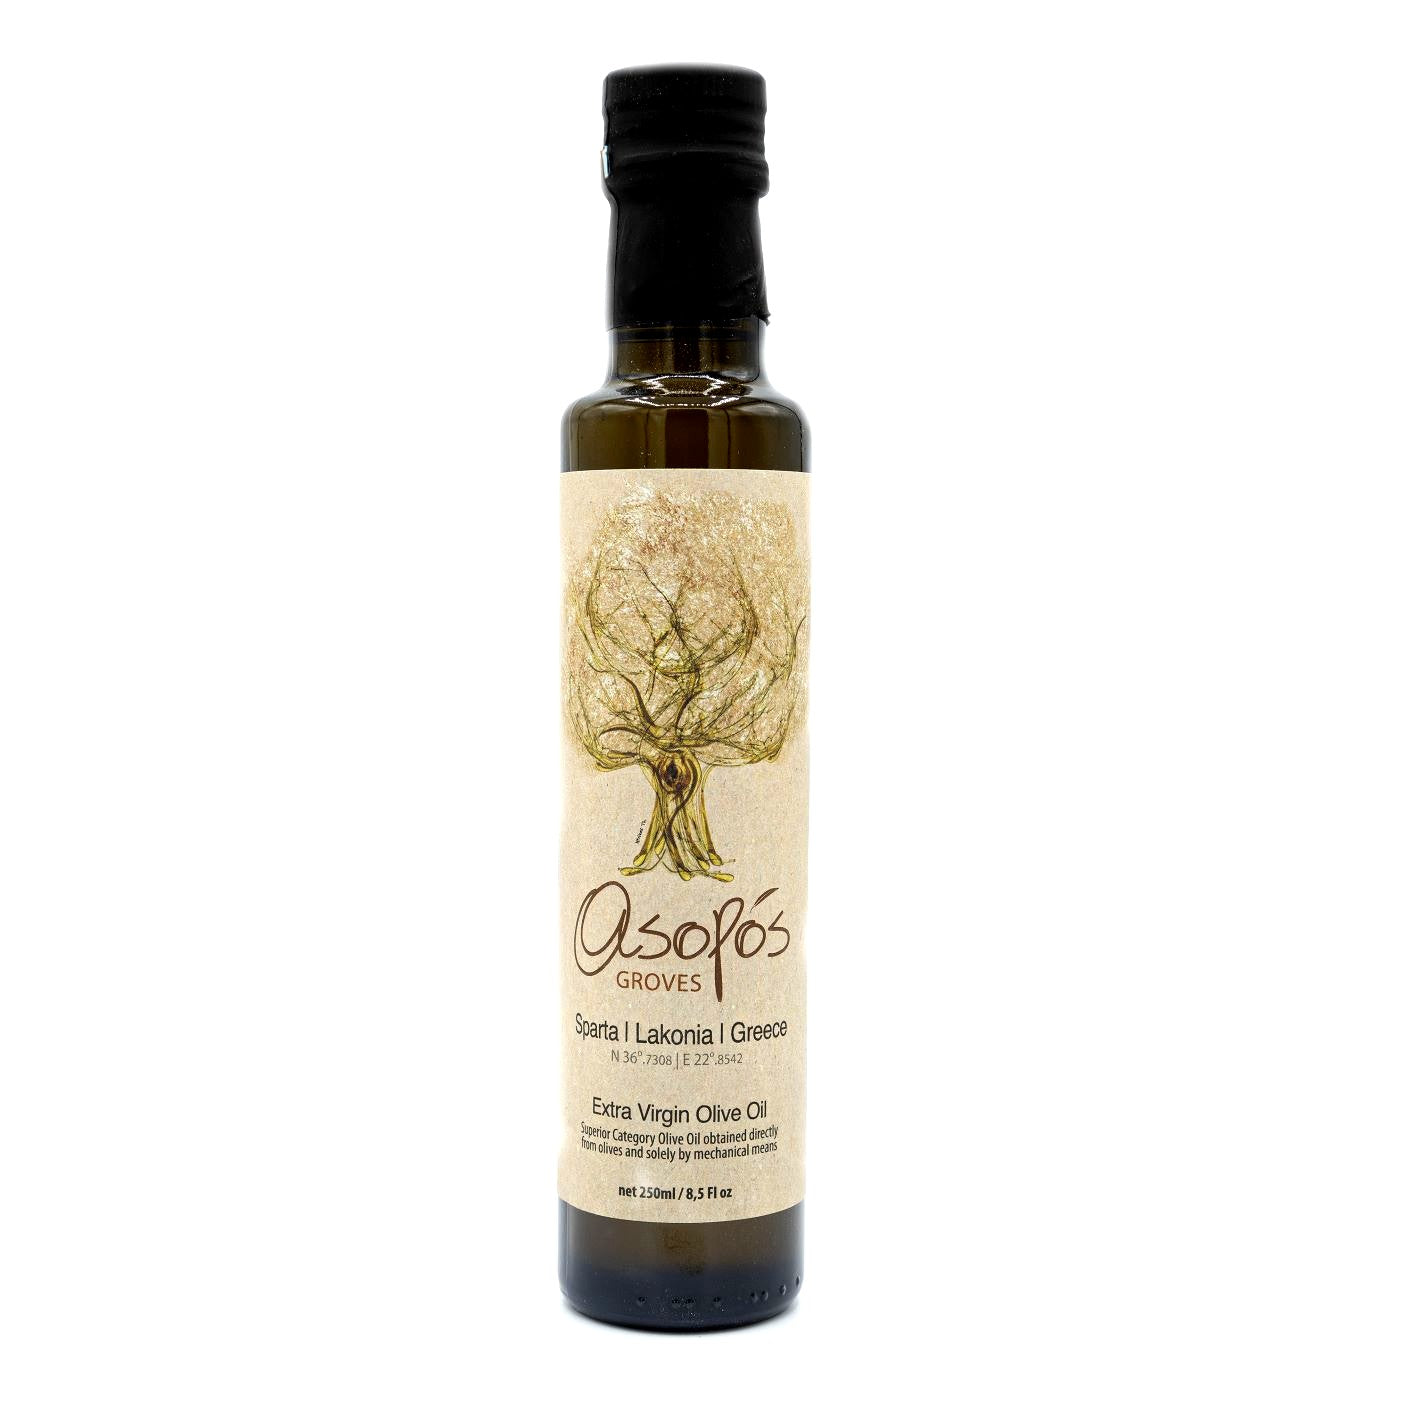 Asopos Groves Extra Virgin Olive Oil bottle 250ml